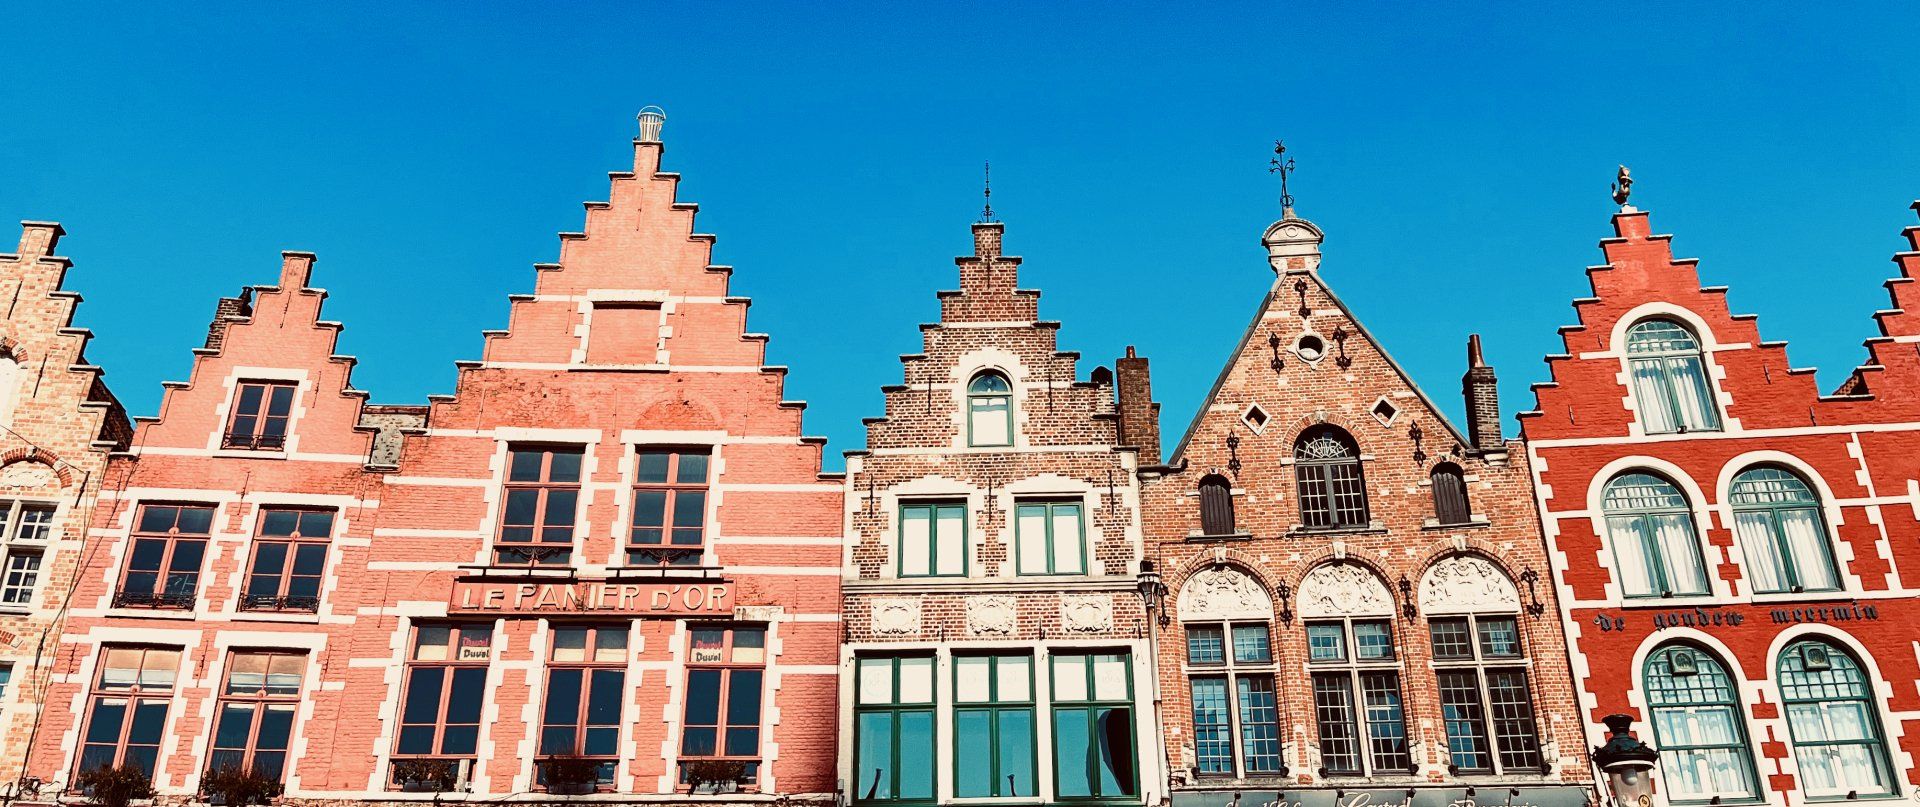 Bruges rooftops in Market Square